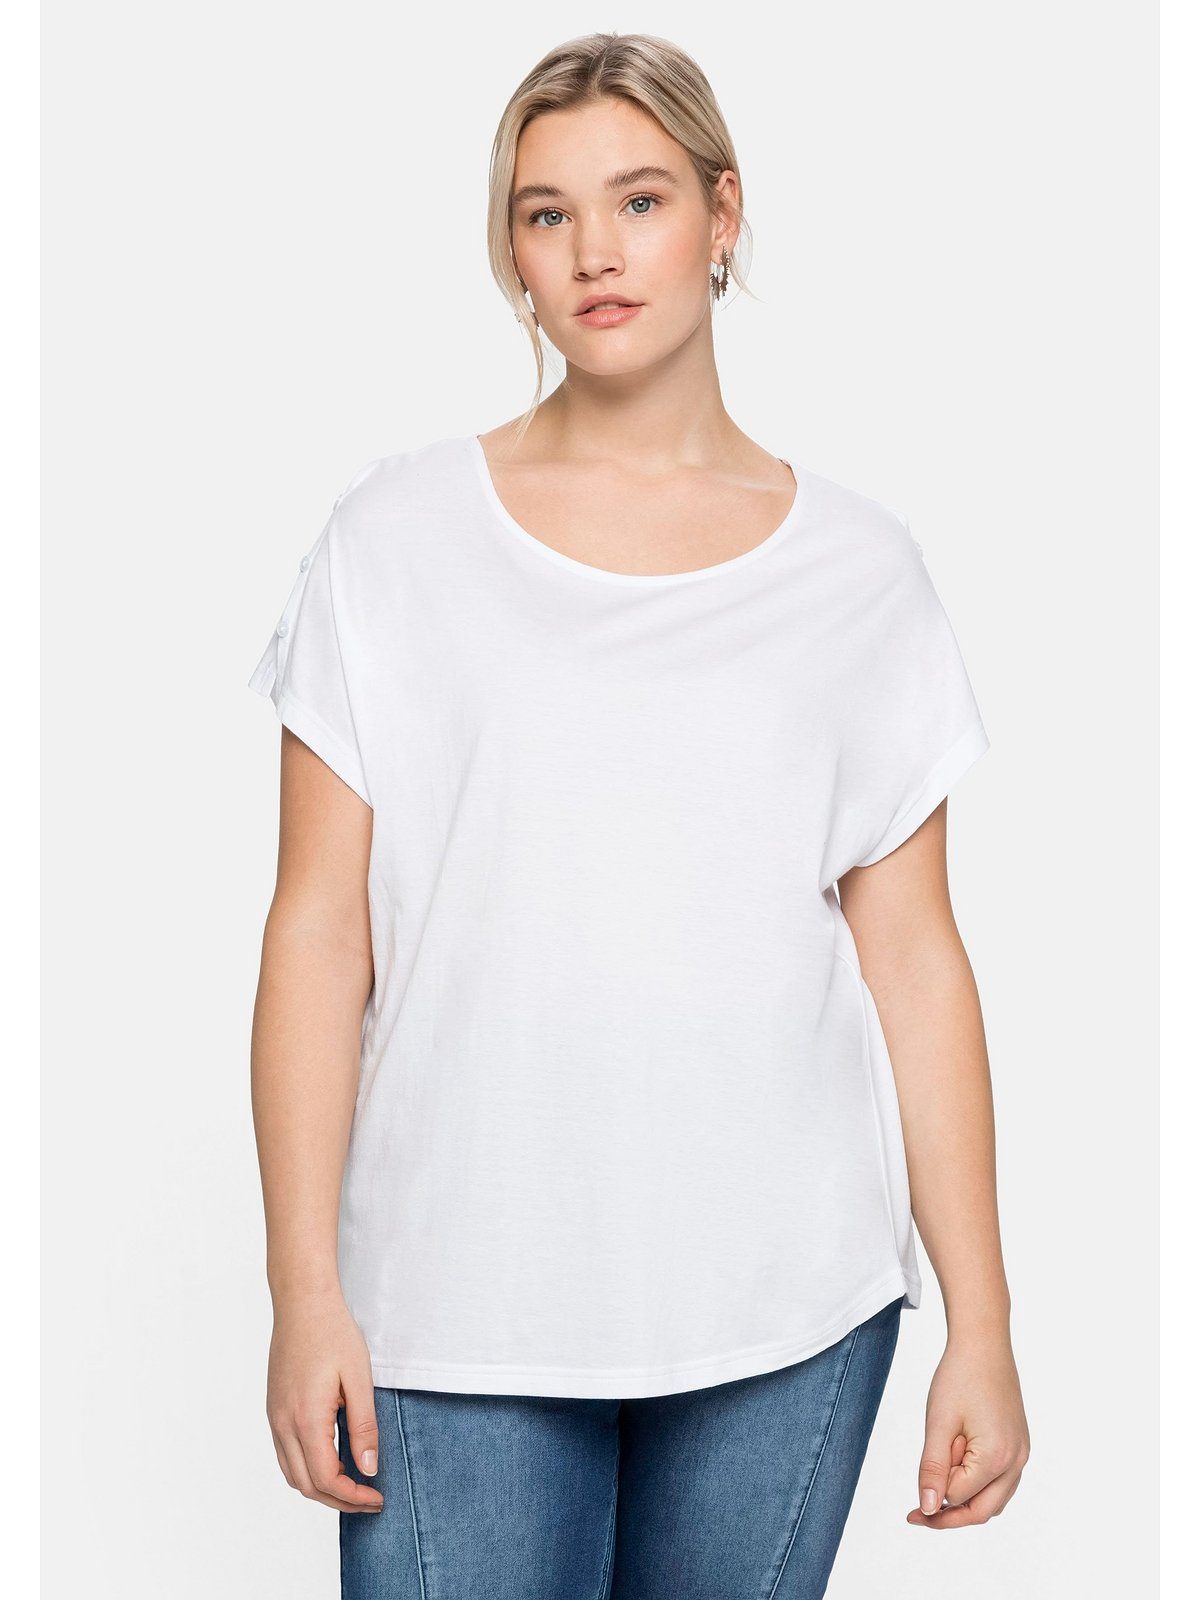 Sheego T-Shirt Große Größen mit offener Schulterpartie, in leichter A-Linie